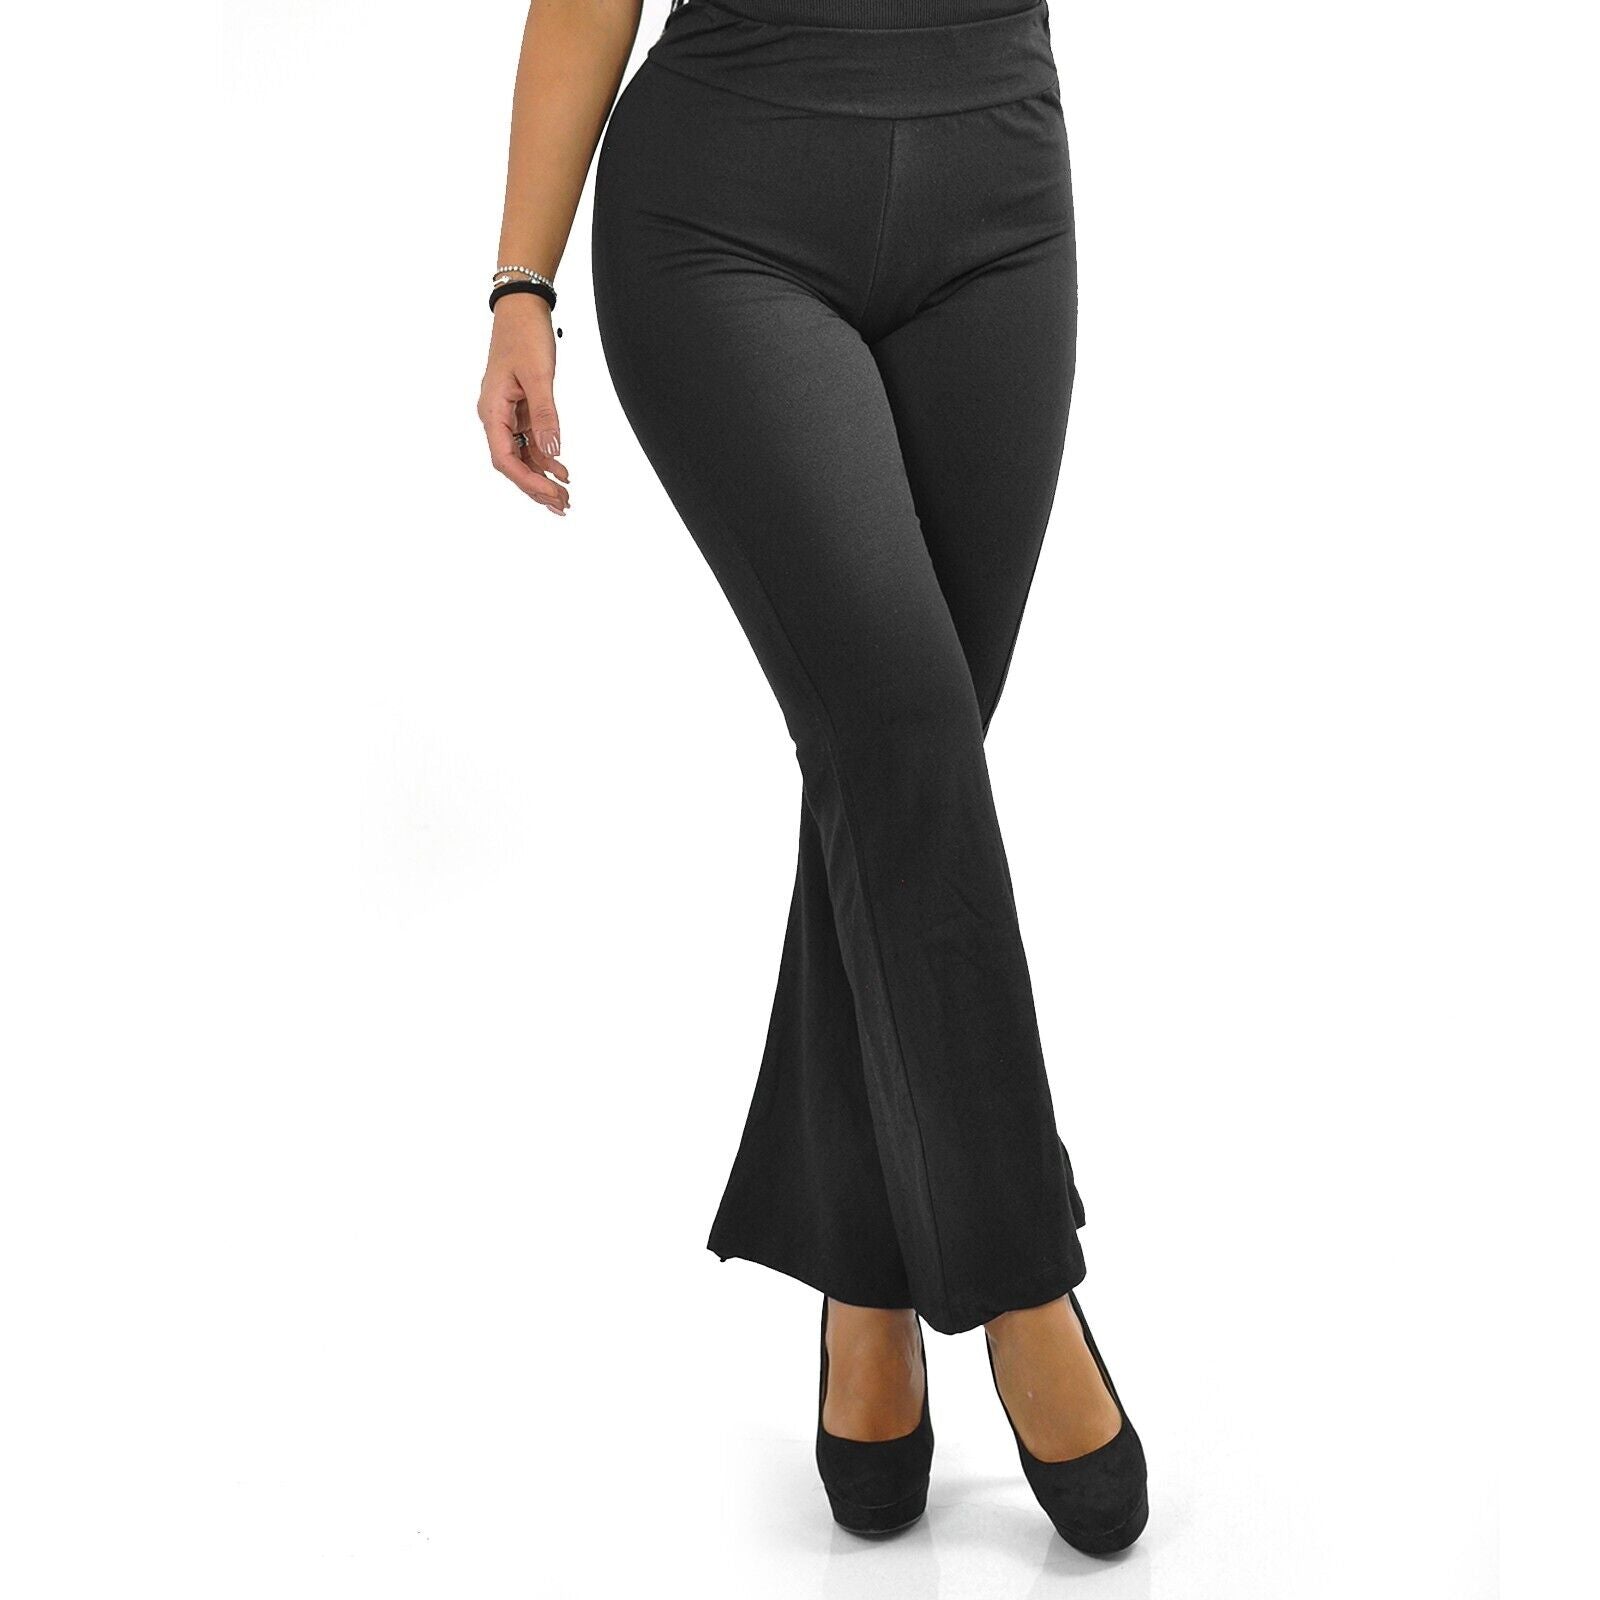 Pantalone zampa d' elefante nero elasticizzato donna elegante italy 10 –  Gyoiamea